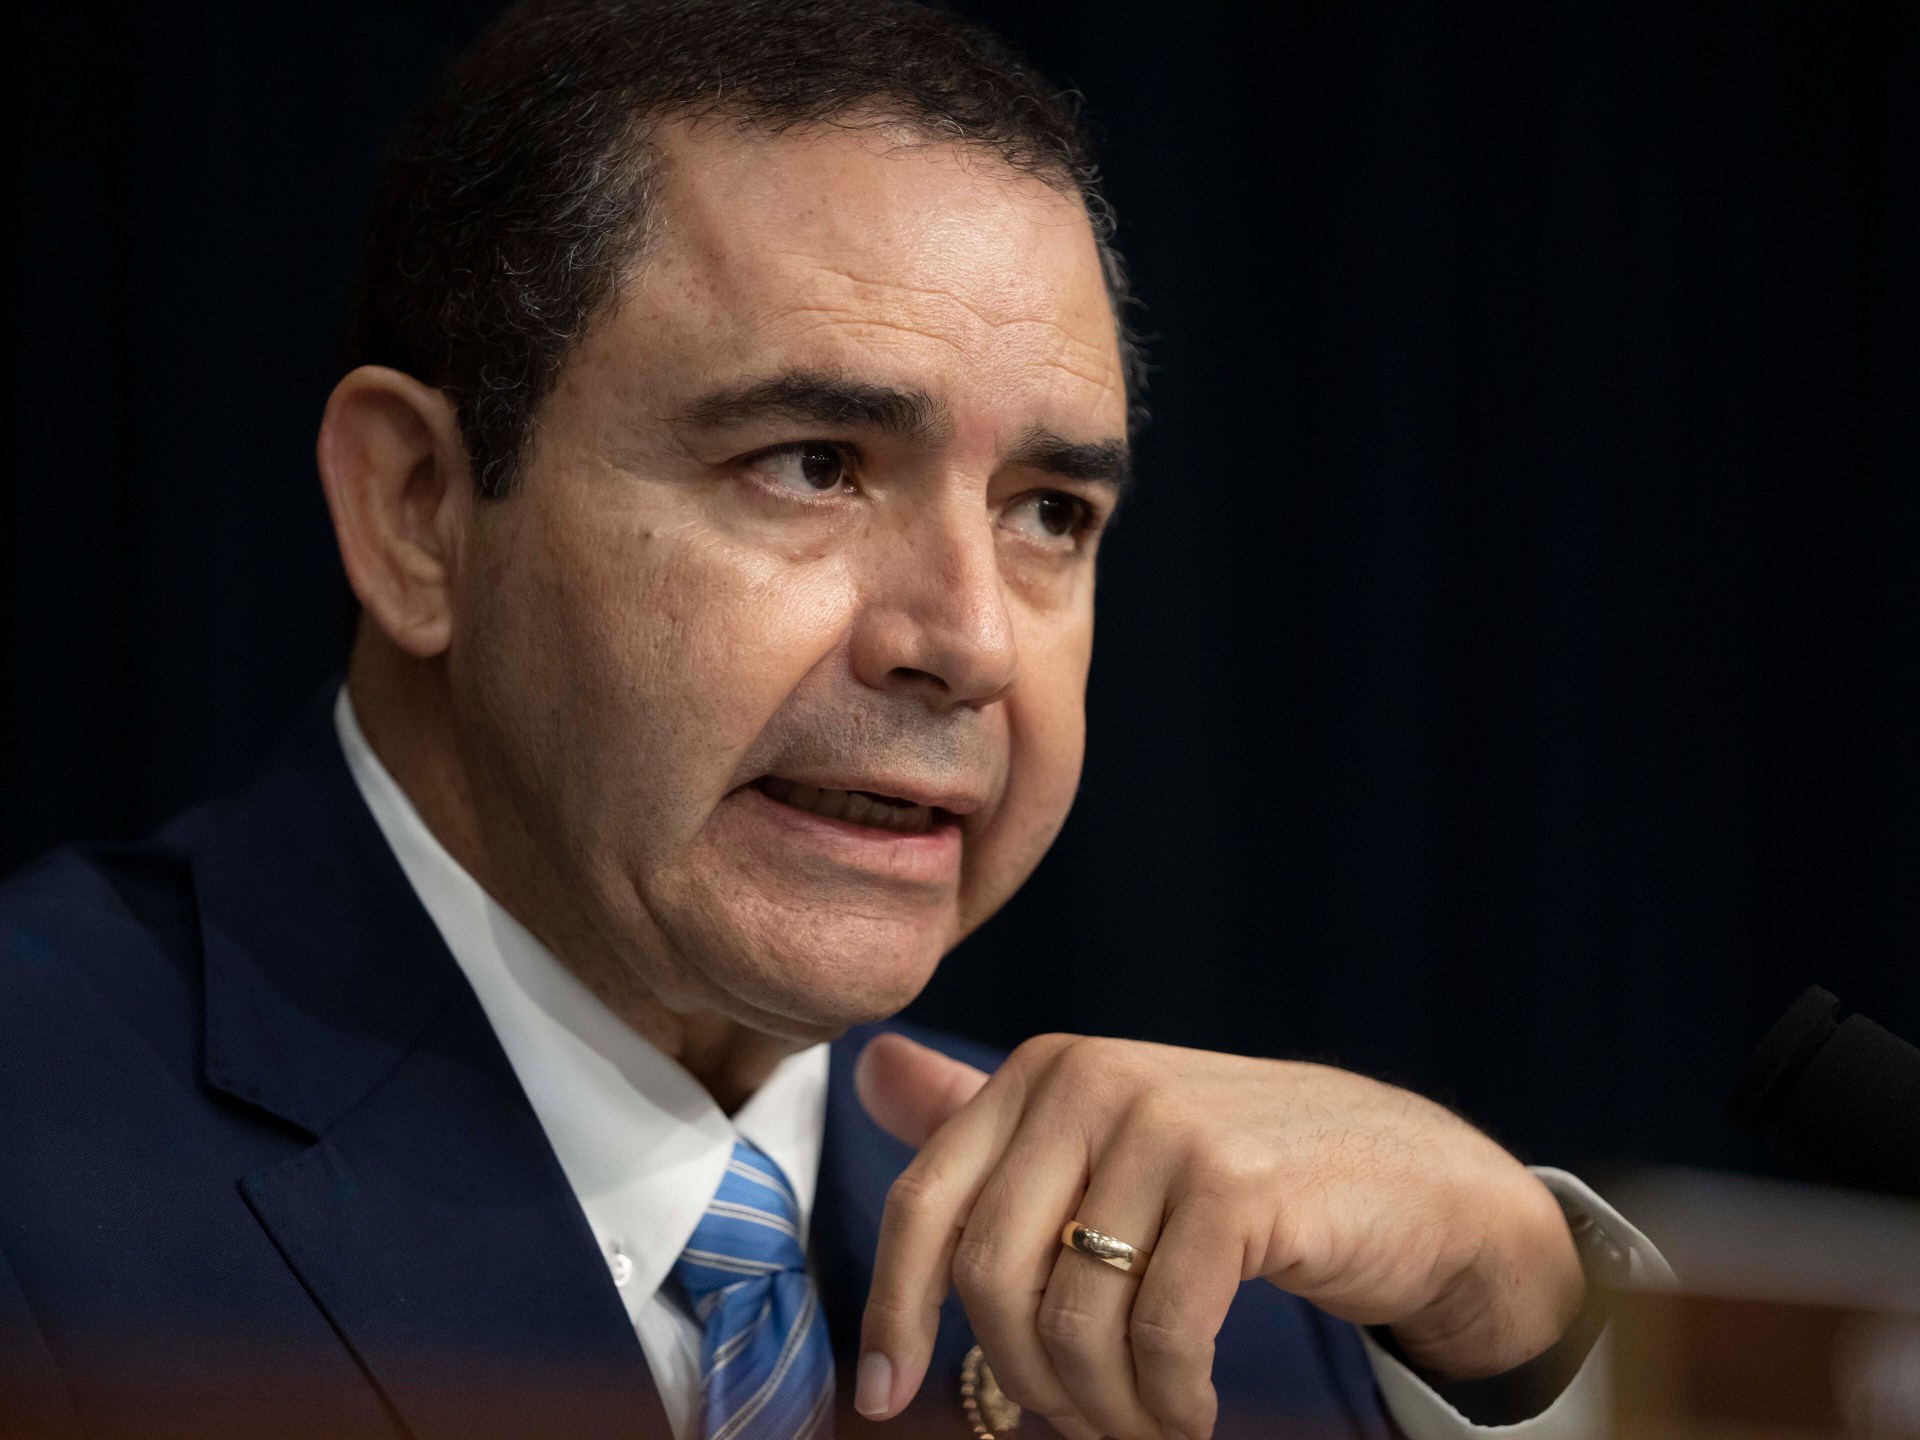 US congressman Cuellar indicted for alleged Azerbaijan influence scheme